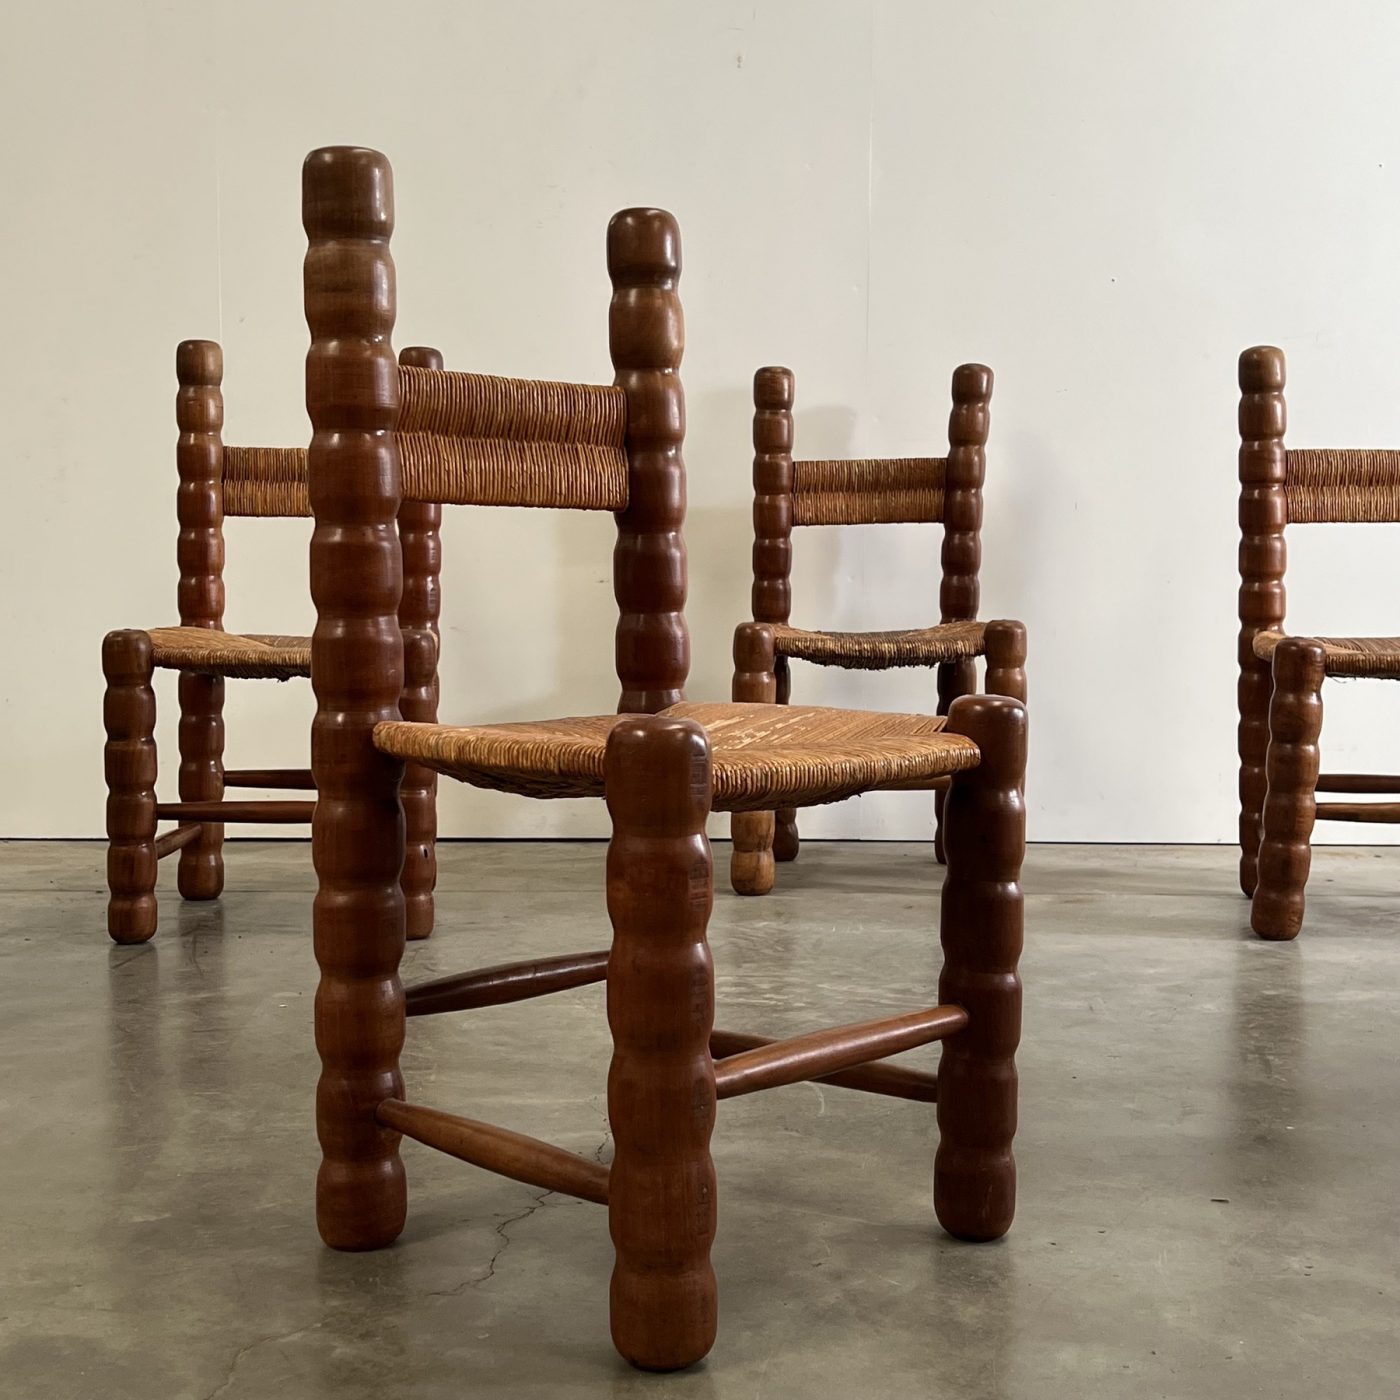 objet-vagabond-massive-chairs0002